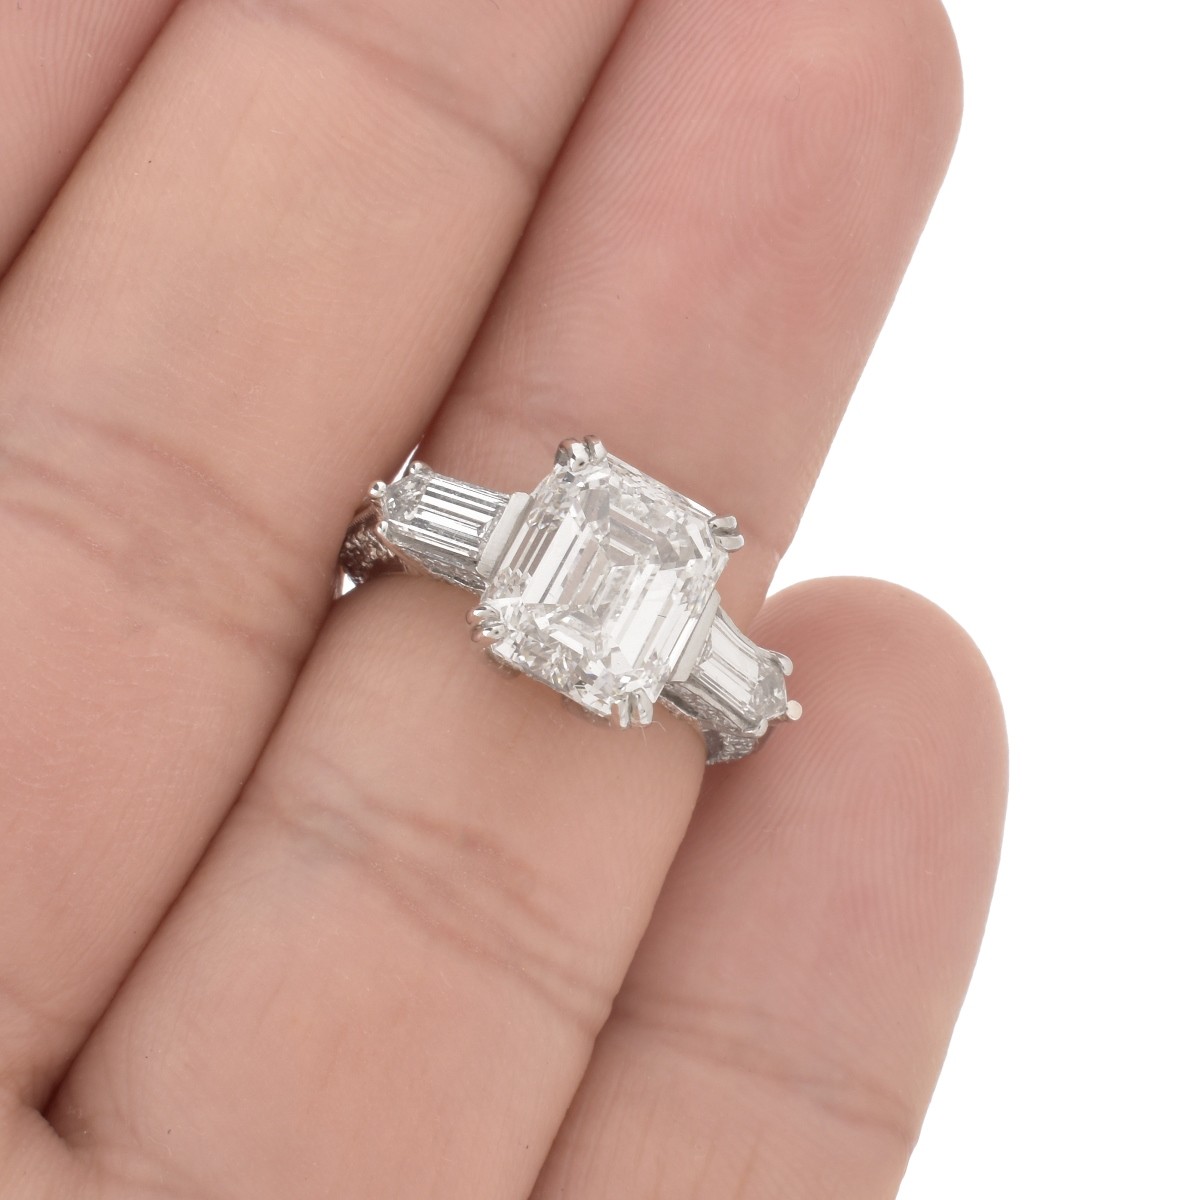 GIA Diamond and Platinum Ring